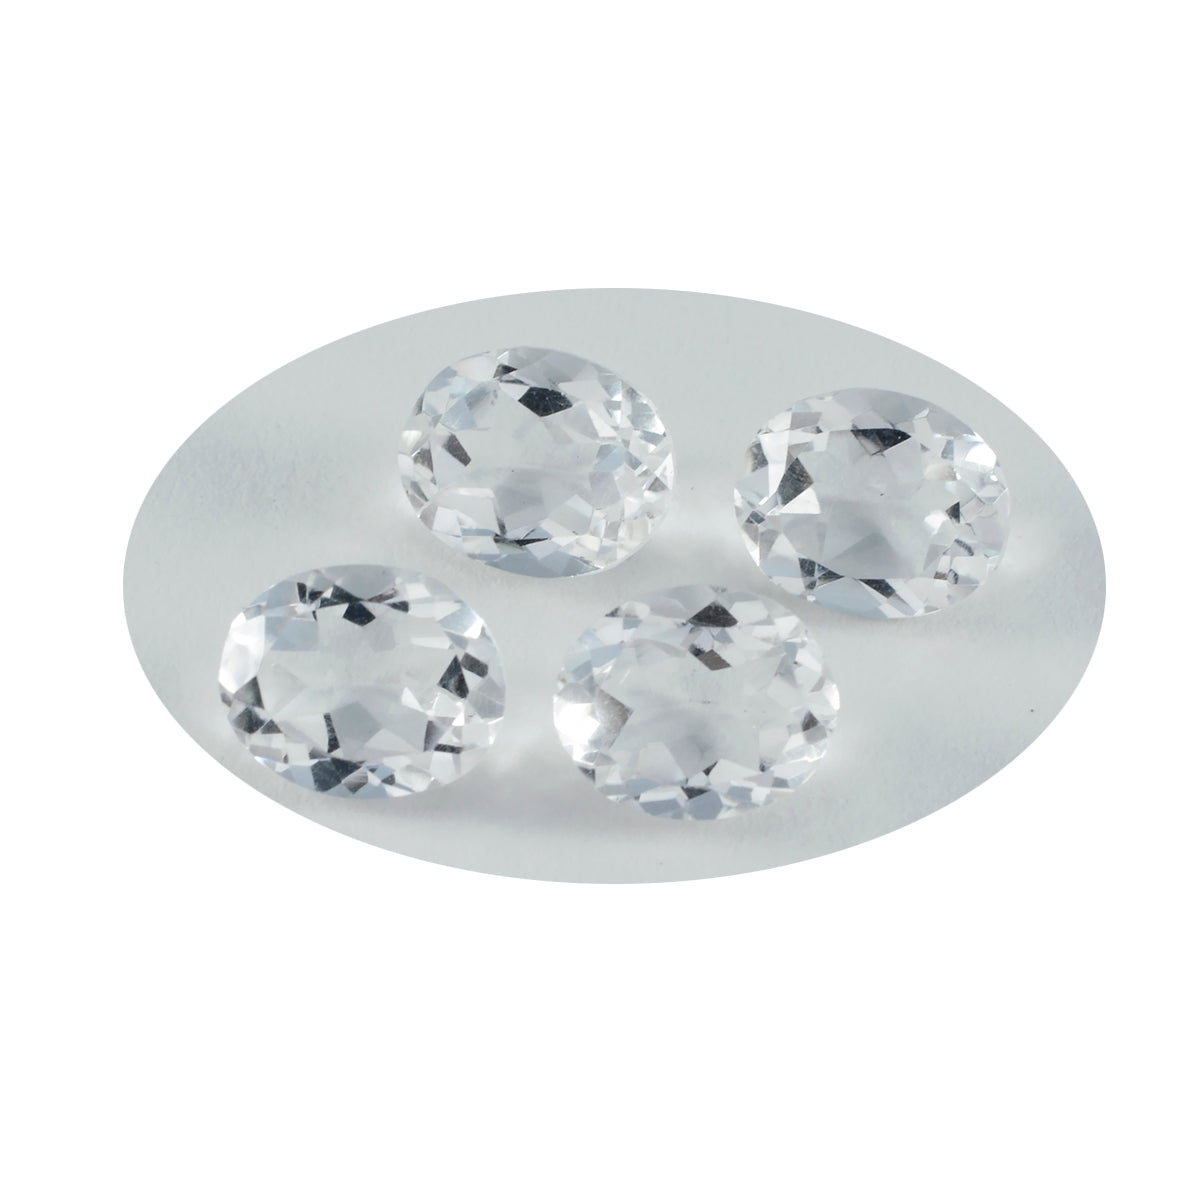 Riyogems 1 pieza de cuarzo de cristal blanco facetado 8x10 mm forma ovalada piedra preciosa de calidad bonita